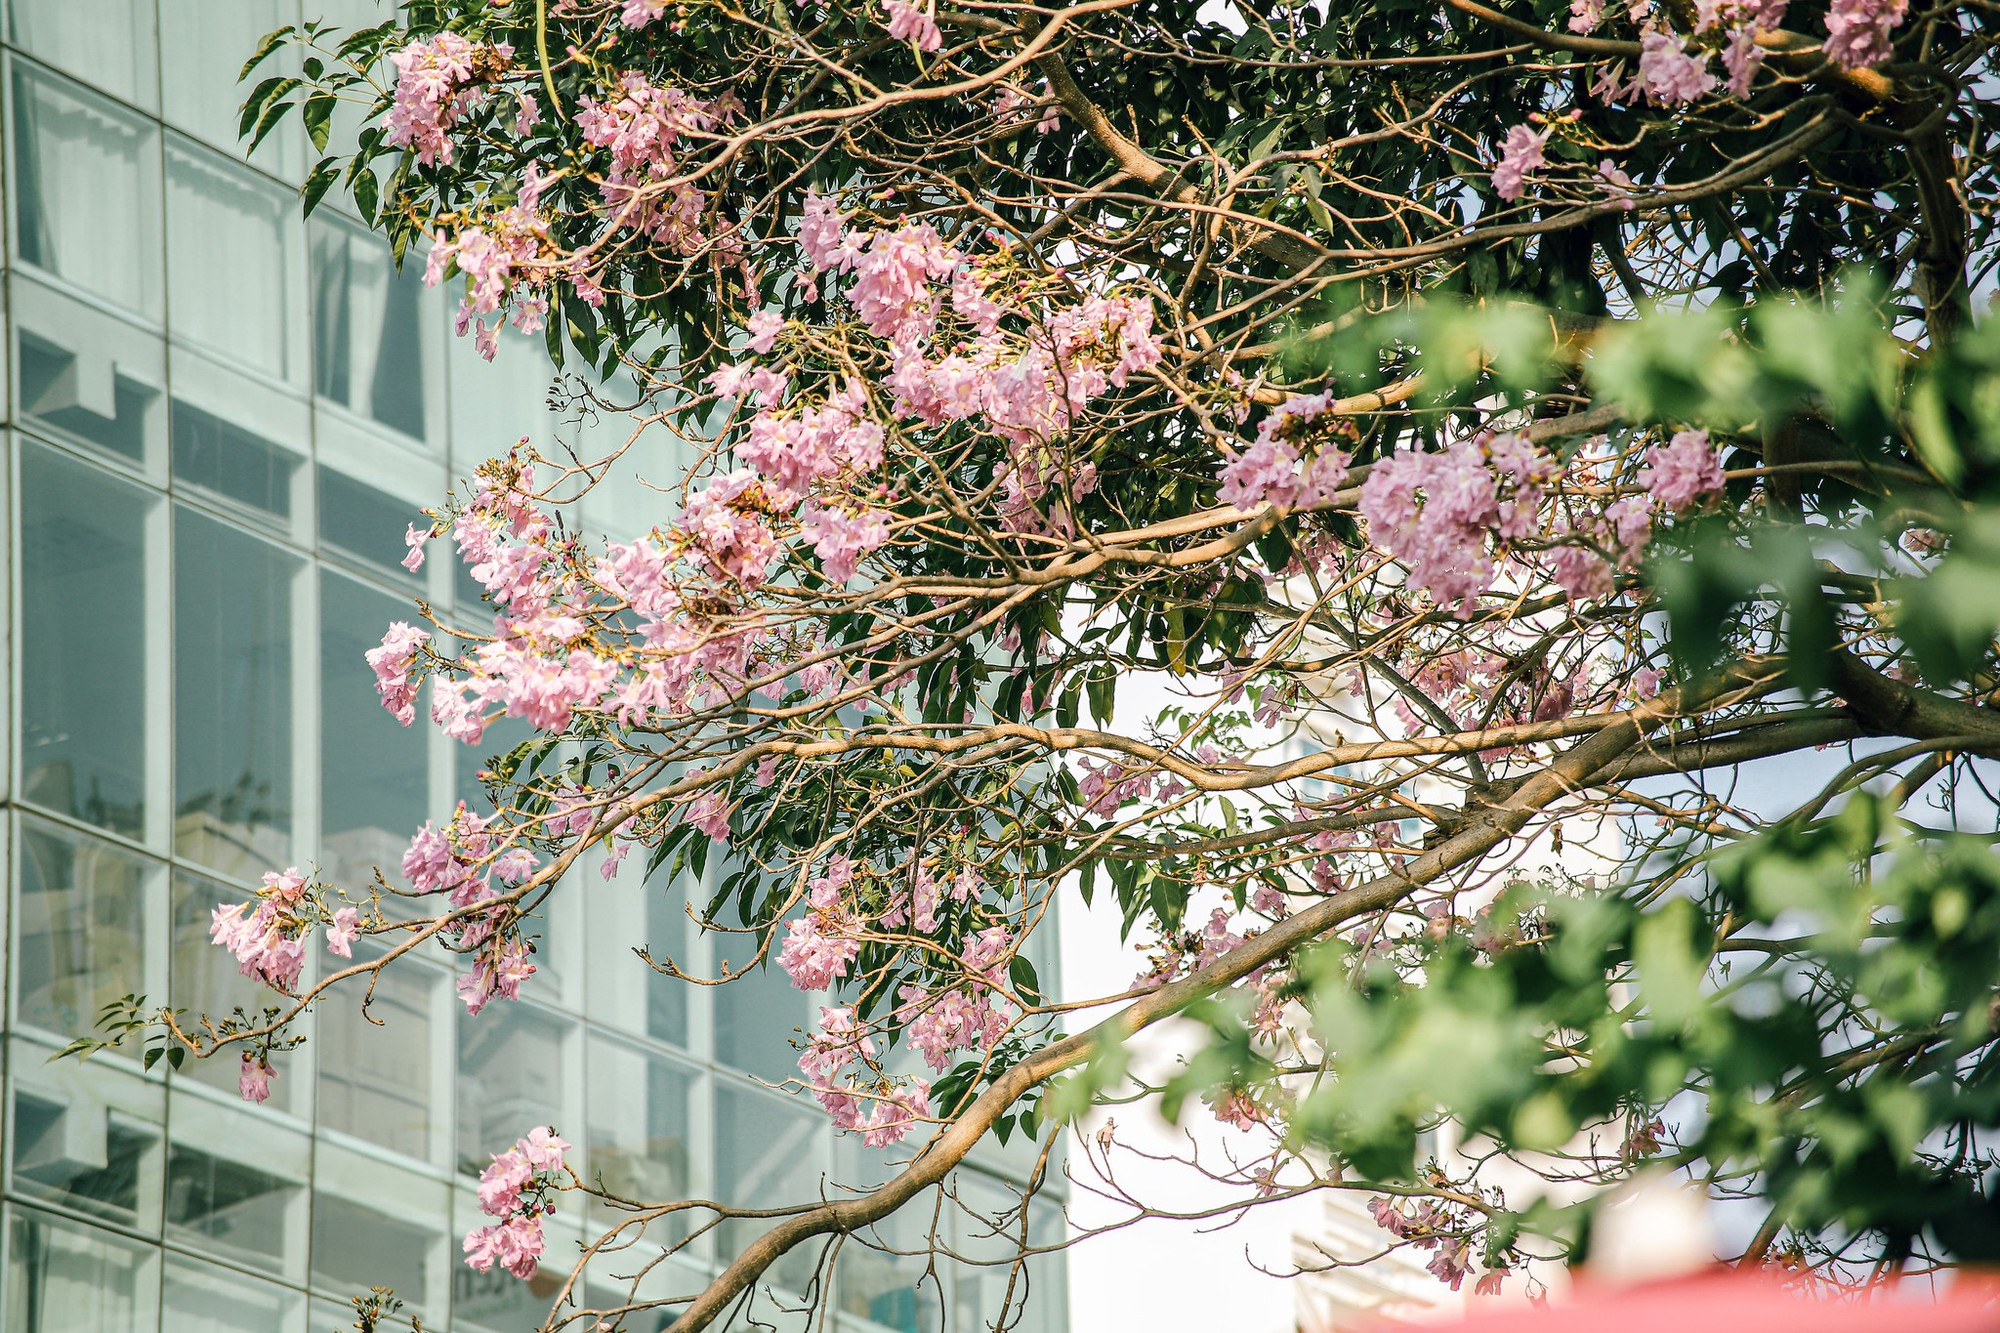 Mùa kèn hồng rợp trời Sài Gòn, chợt thấy thành phố mộng mơ biết bao giữa sắc hoa rực rỡ- Ảnh 2.